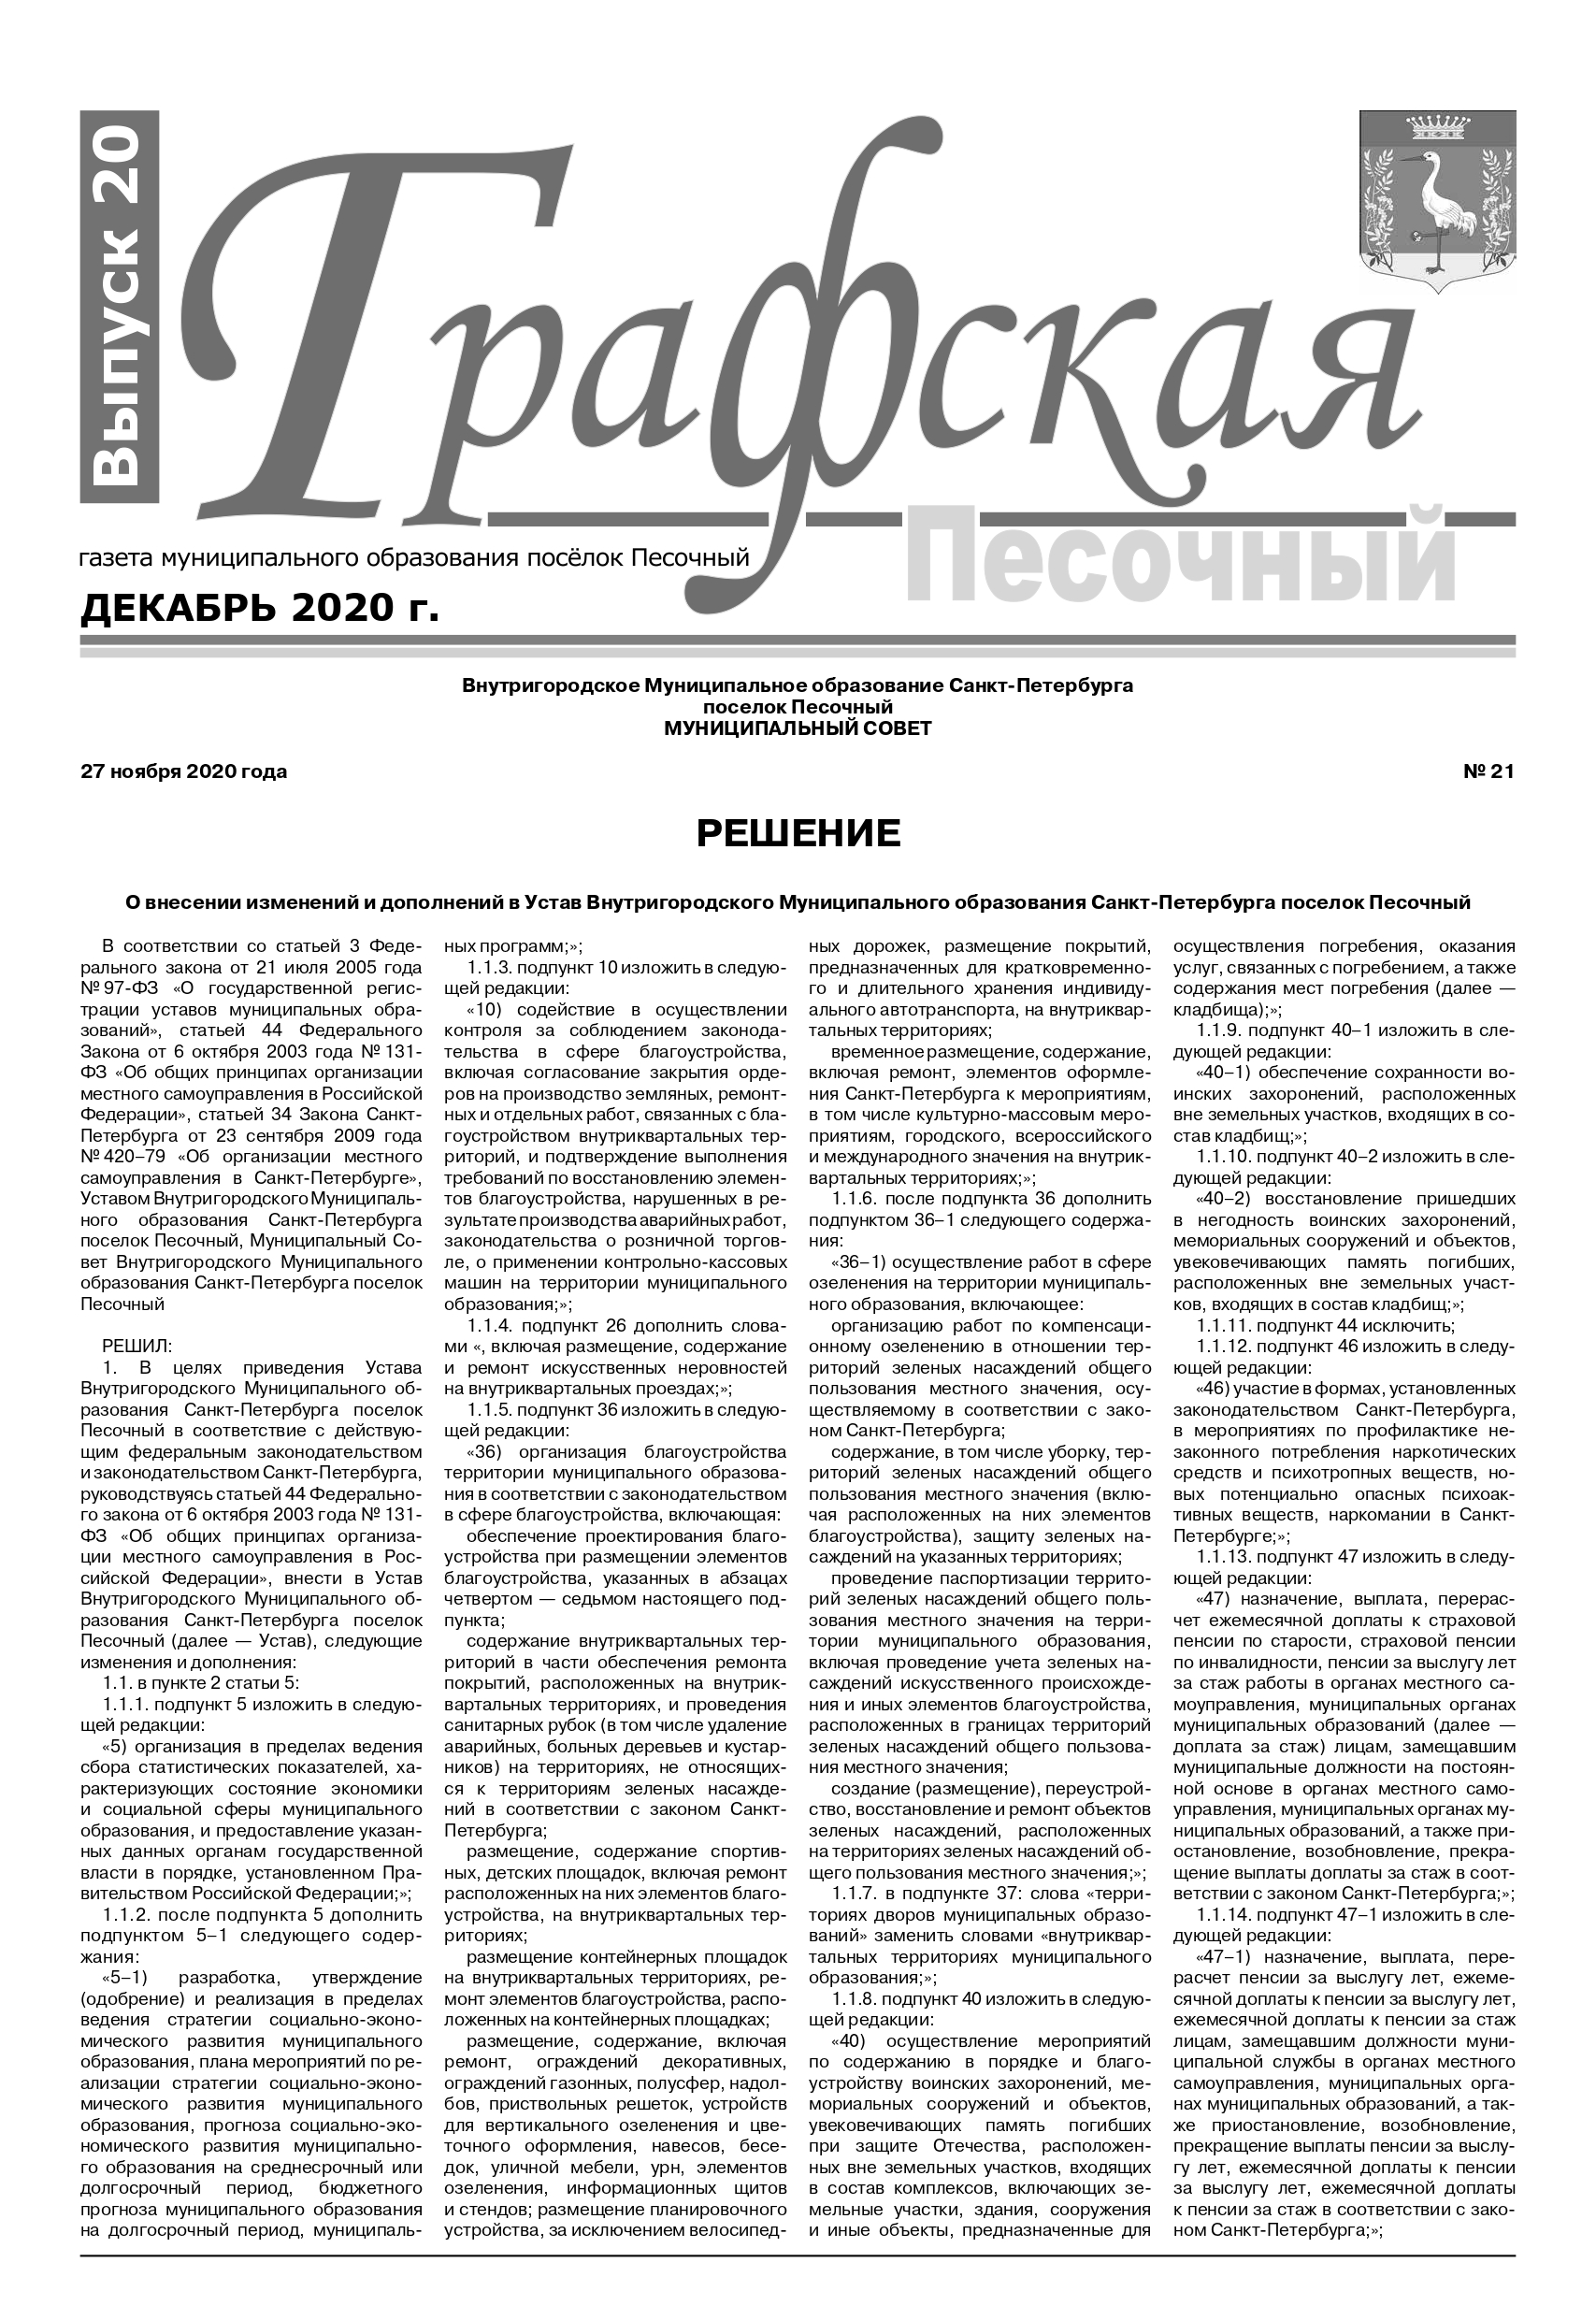 Газета "Графская" выпуск № 20 декабрь 2020